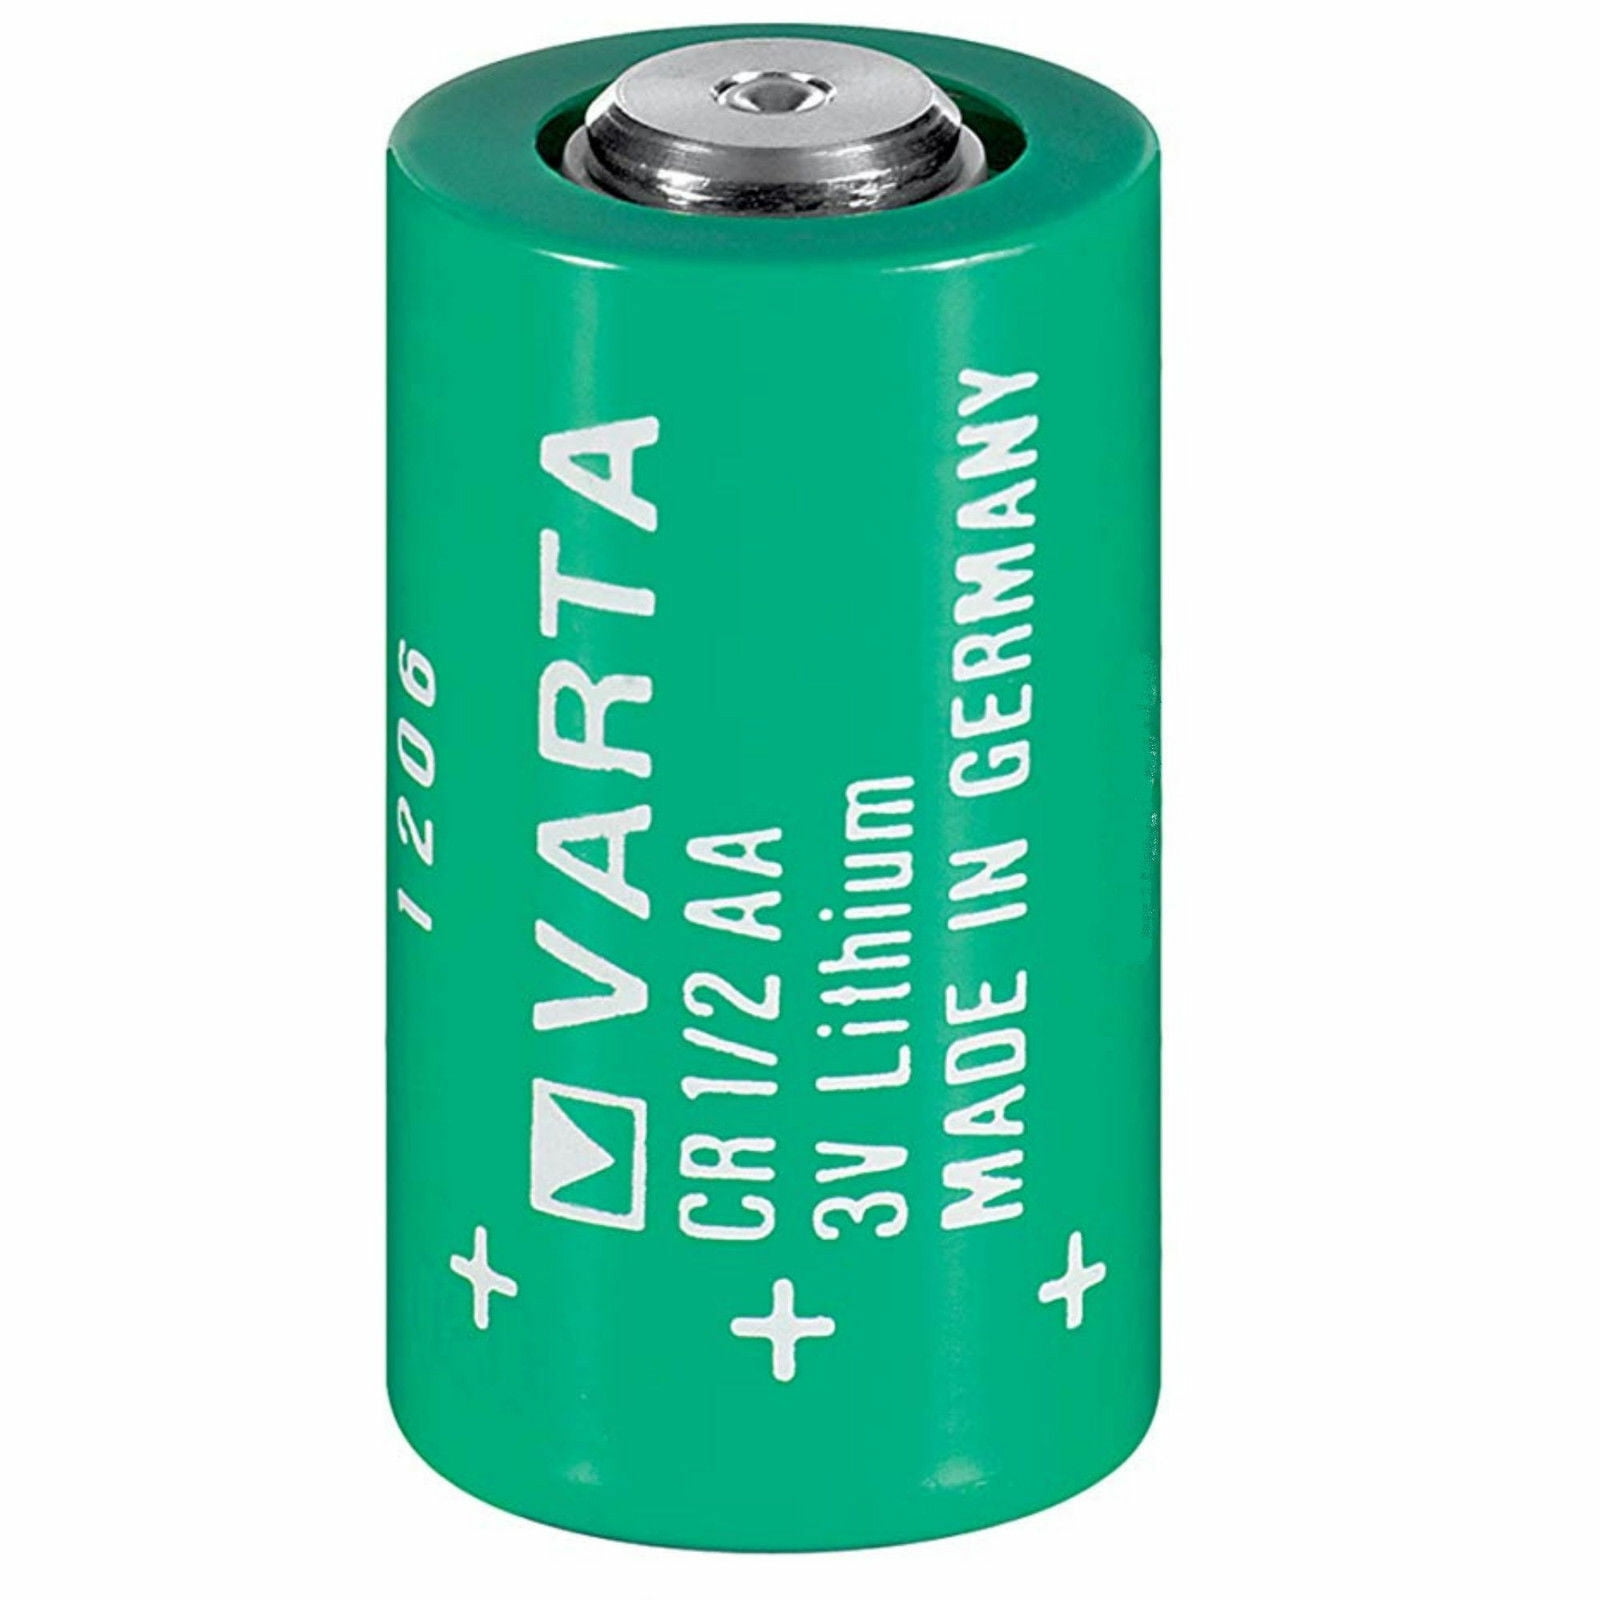 3v battery. Батарейка литиевая Varta CR 1/2 AA 3v. Батарейку литиевую cr1/2aa Varta. Varta cr1/2 AA. Элемент питания Varta CR 1/2aa 3в.